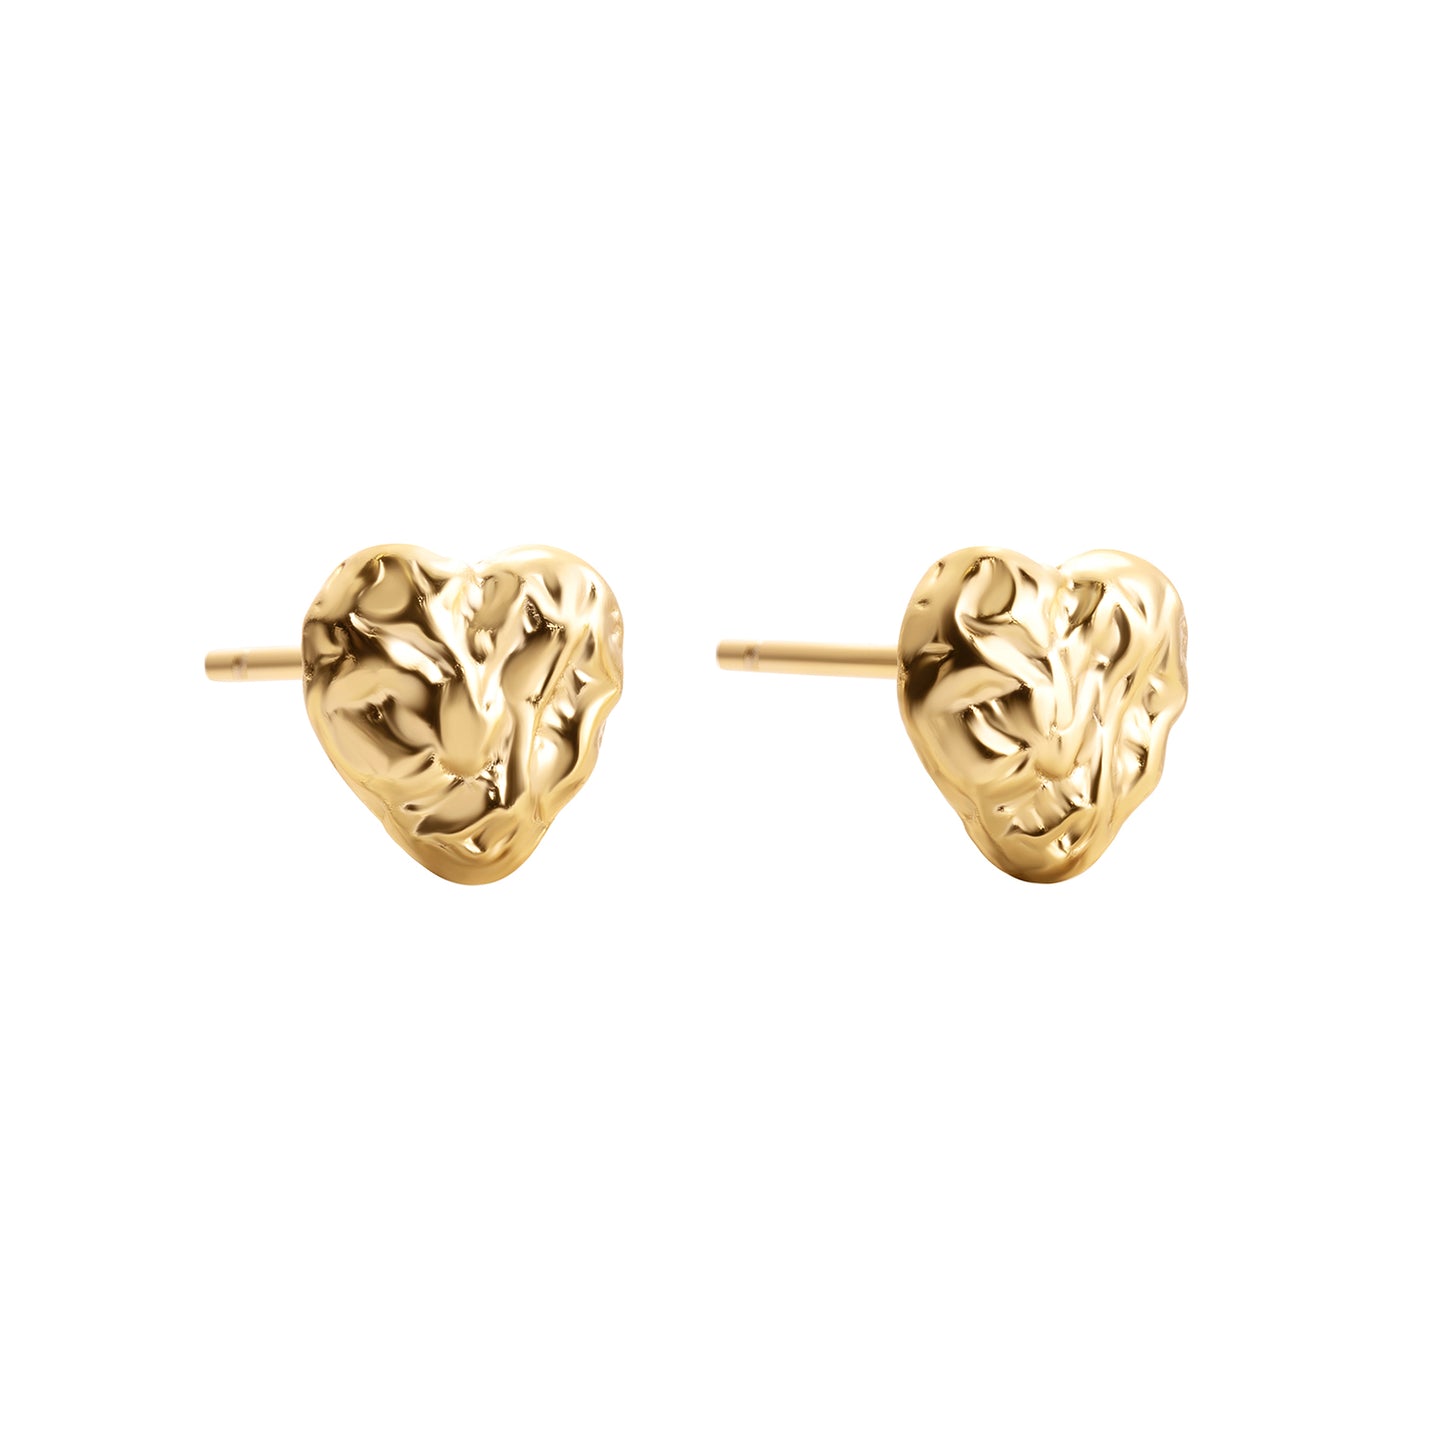 Heart shaped golden stud earrings